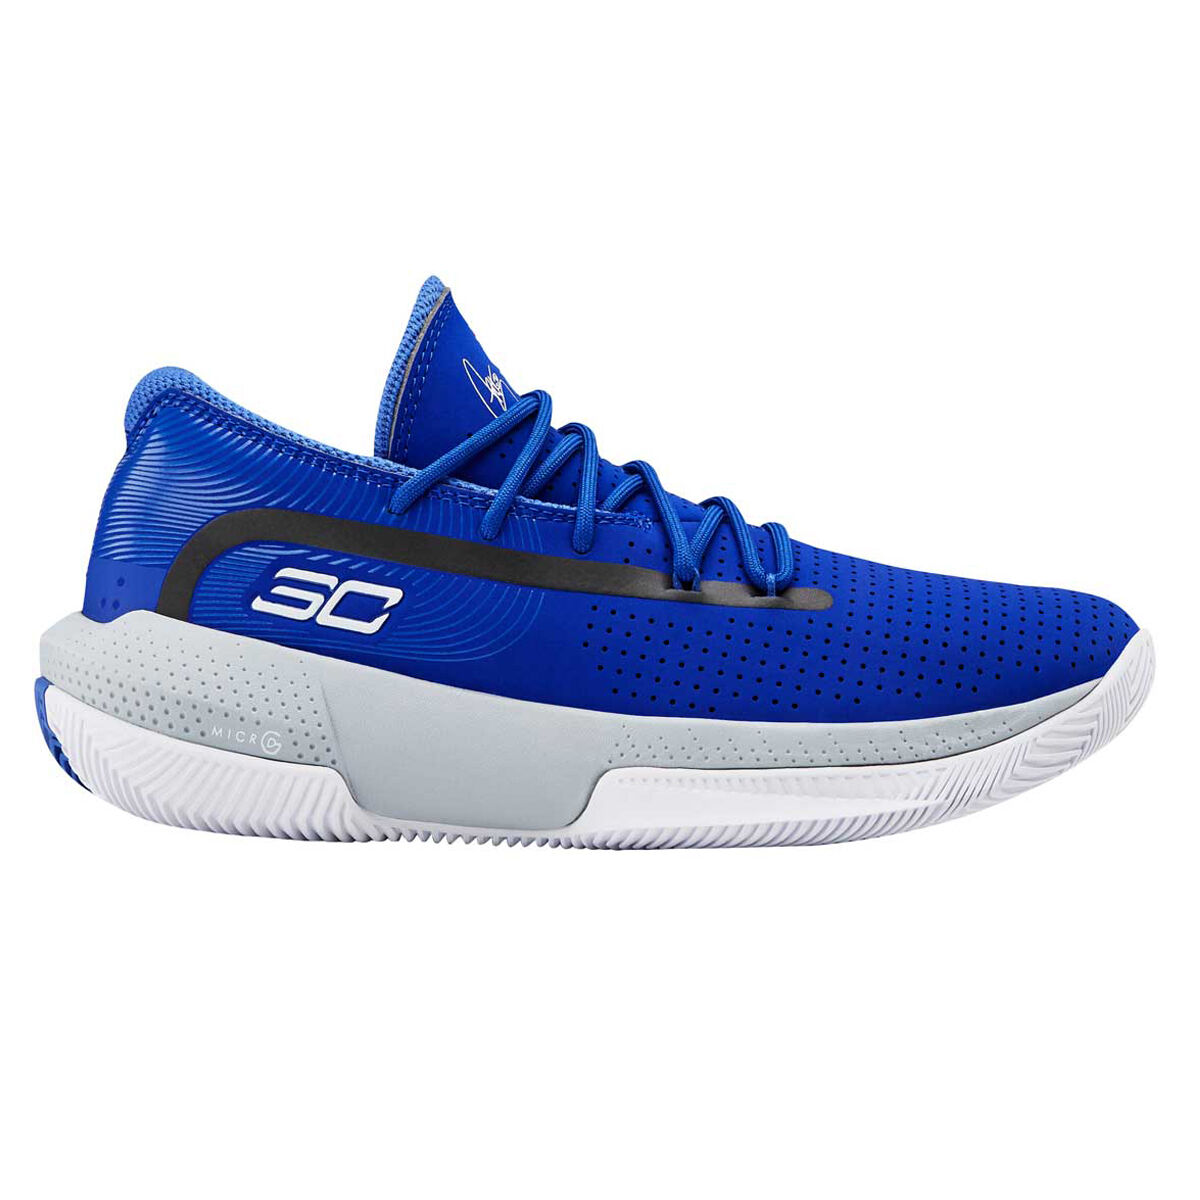 sc shoes blue